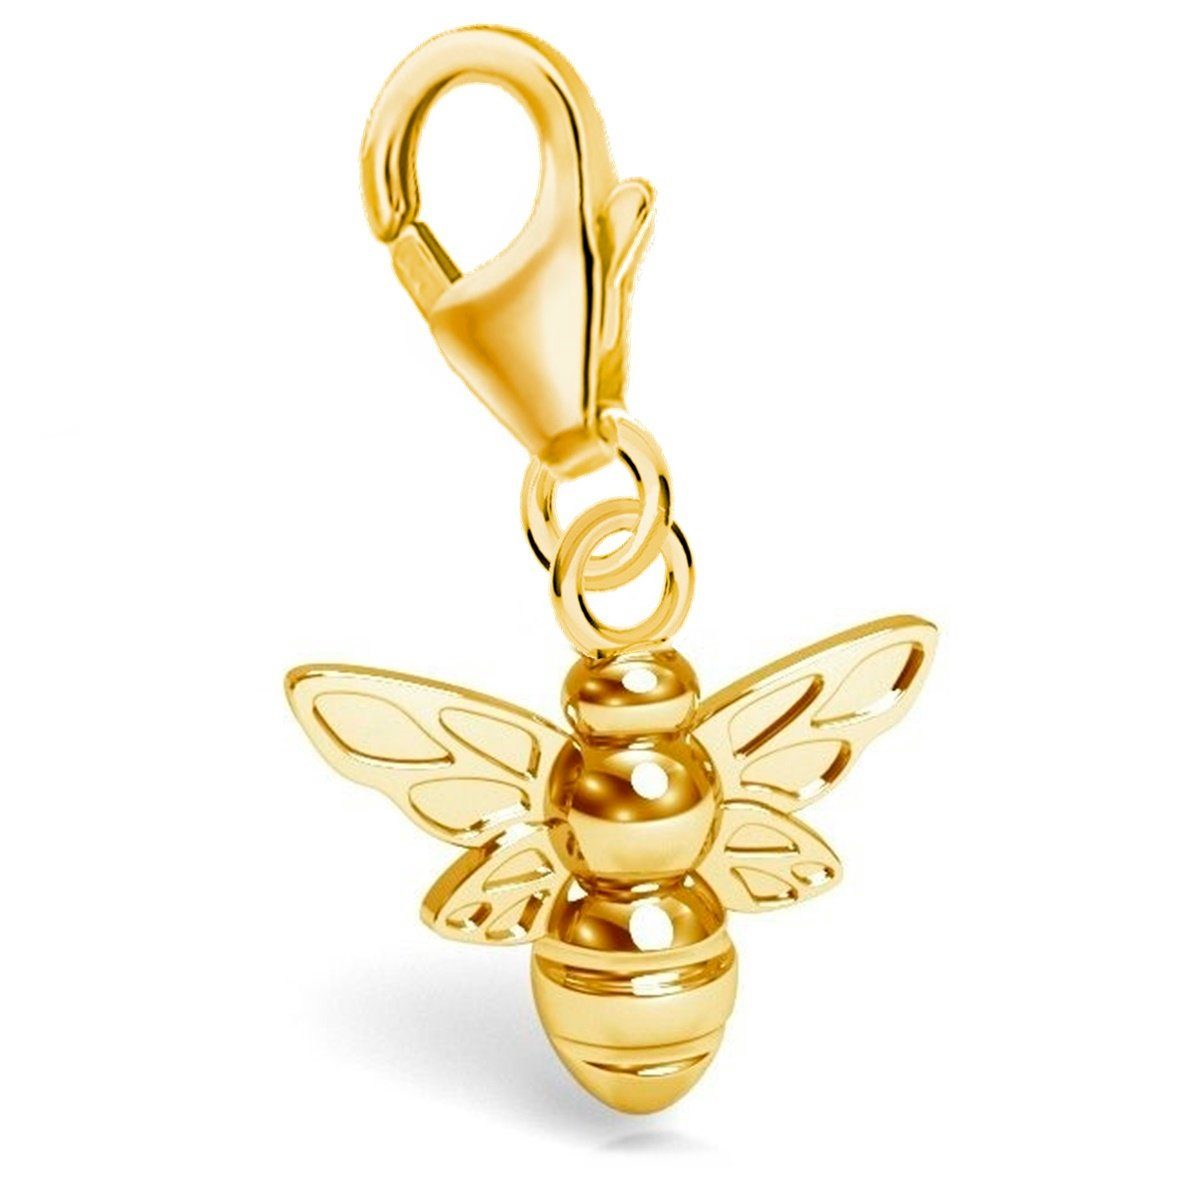 Damen Schmuck Goldene Hufeisen Charm-Einhänger Biene Karabiner Charm Anhänger für Bettelarmband aus 925 Sterling Silber Vergolde